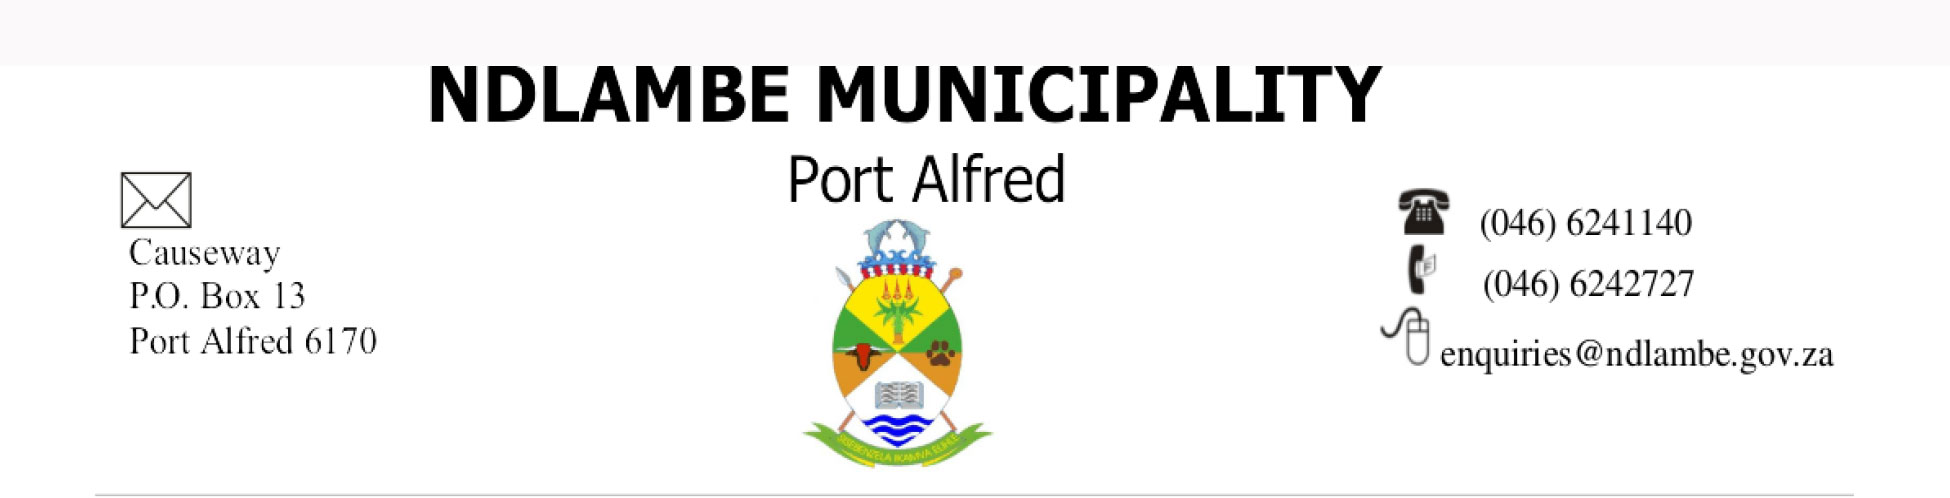 Ndlambe municipality letter head